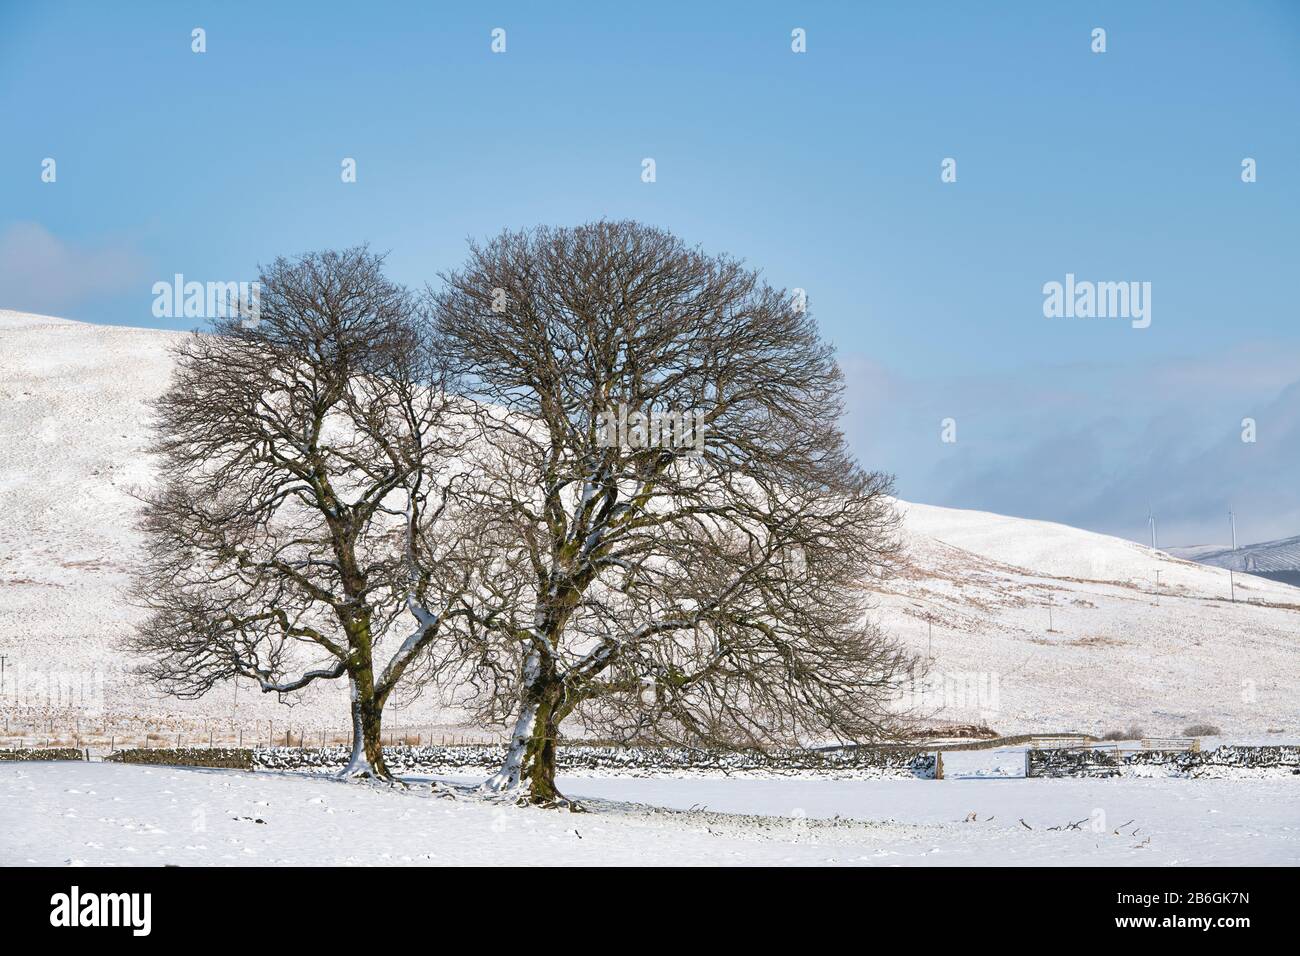 Winterbäume im Schnee in schottischer Landschaft. Dumfries und Galloway, schottische Grenzen, Schottland Stockfoto